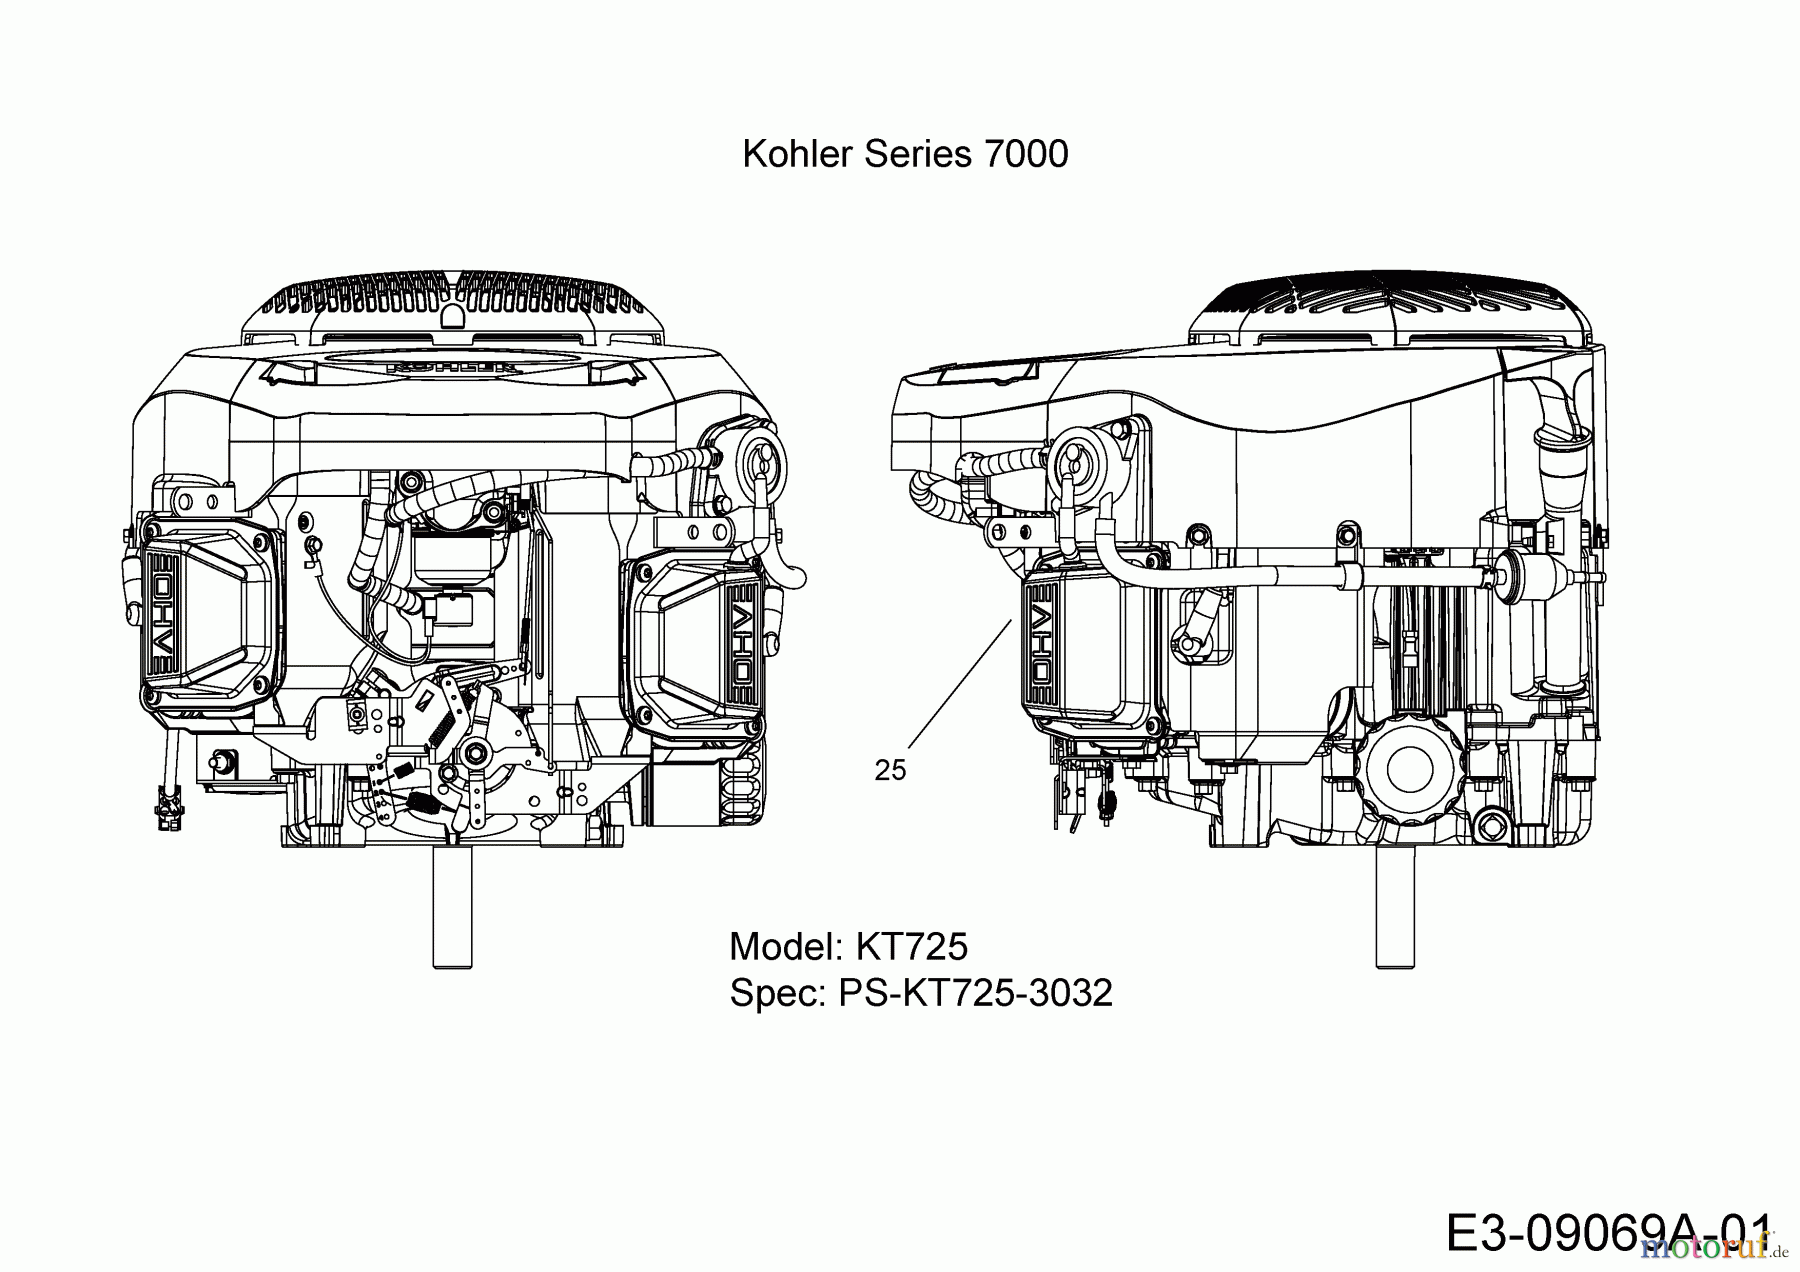  Massey Ferguson Rasentraktoren MF 41-22 RD 13HP91GN695  (2015) Motor Kohler